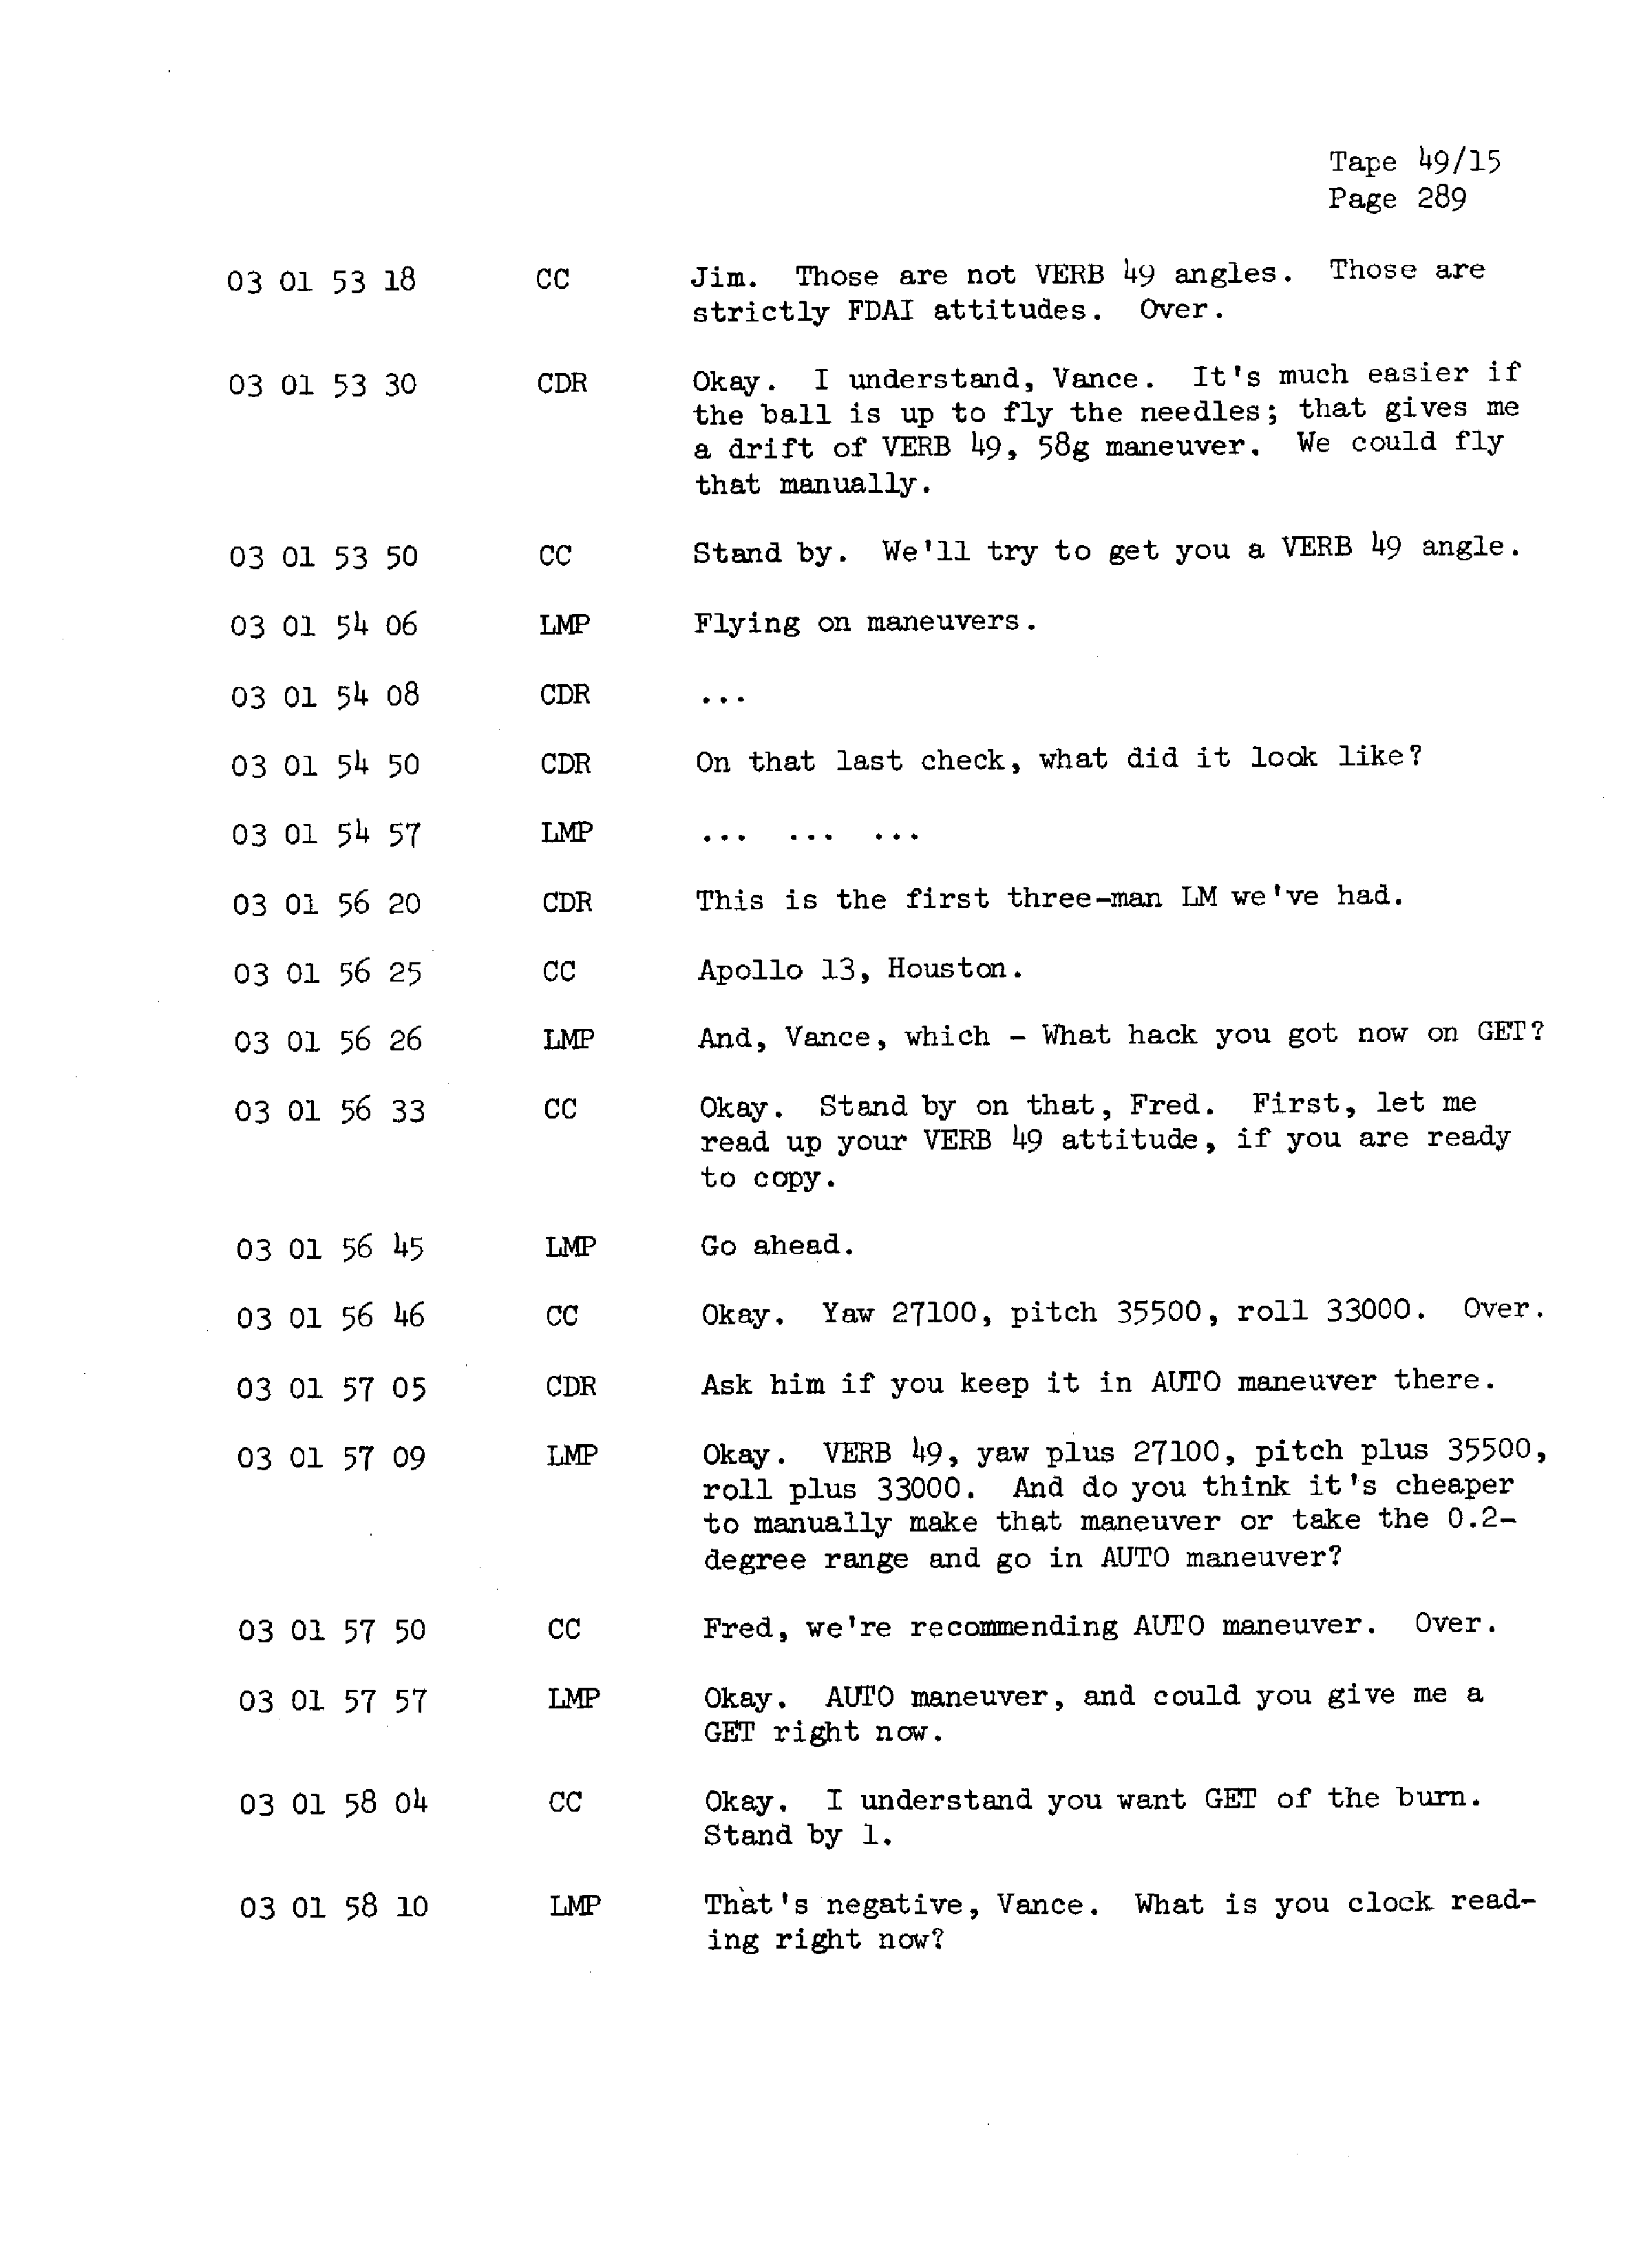 Page 296 of Apollo 13’s original transcript